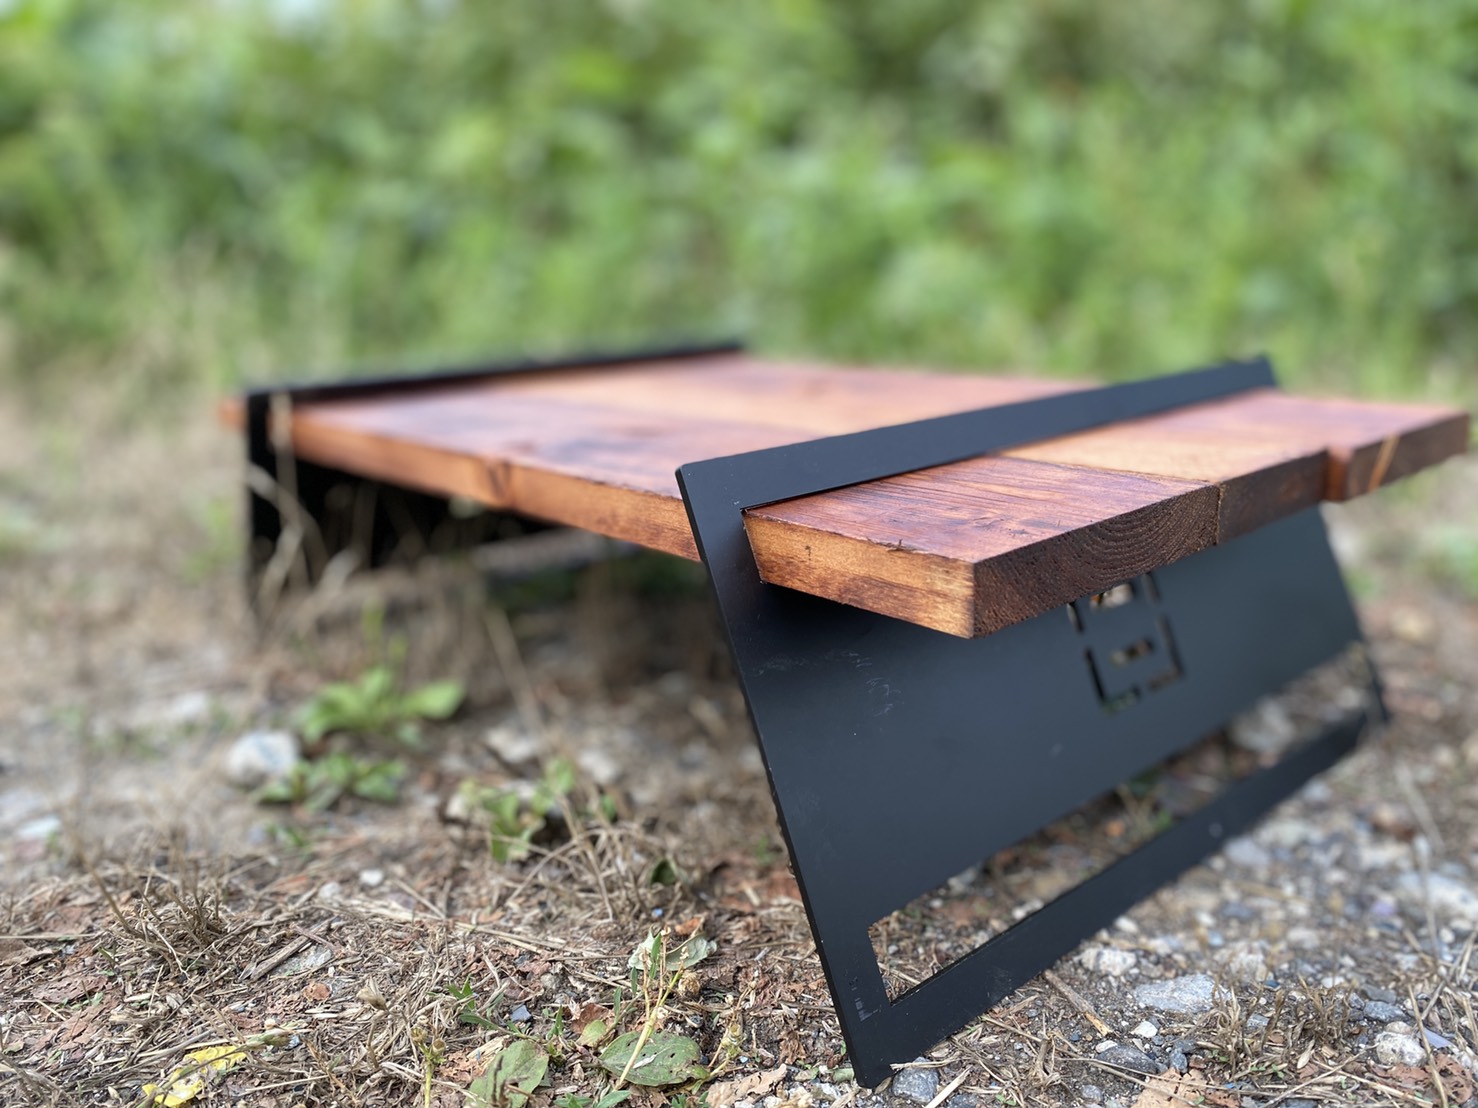 Diy初心者必見 キャンプテーブルの自作には 鉄の足plate がおすすめ 1時間で誰でも簡単にオリジナルテーブルが作れる方法を紹介 Sotopia